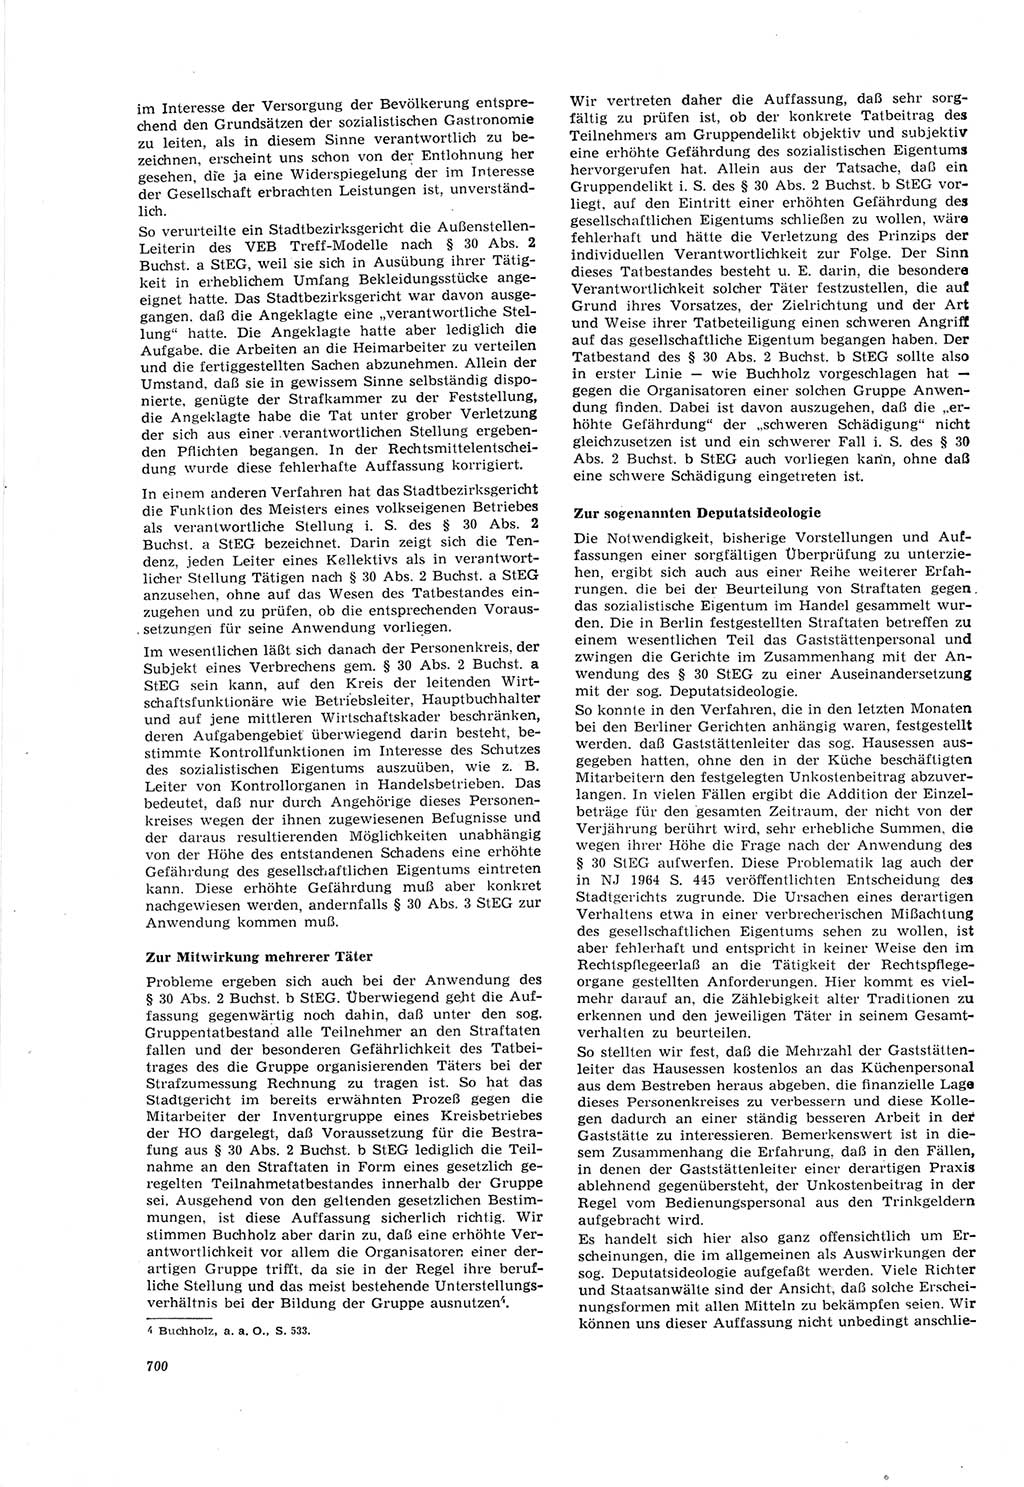 Neue Justiz (NJ), Zeitschrift für Recht und Rechtswissenschaft [Deutsche Demokratische Republik (DDR)], 18. Jahrgang 1964, Seite 700 (NJ DDR 1964, S. 700)